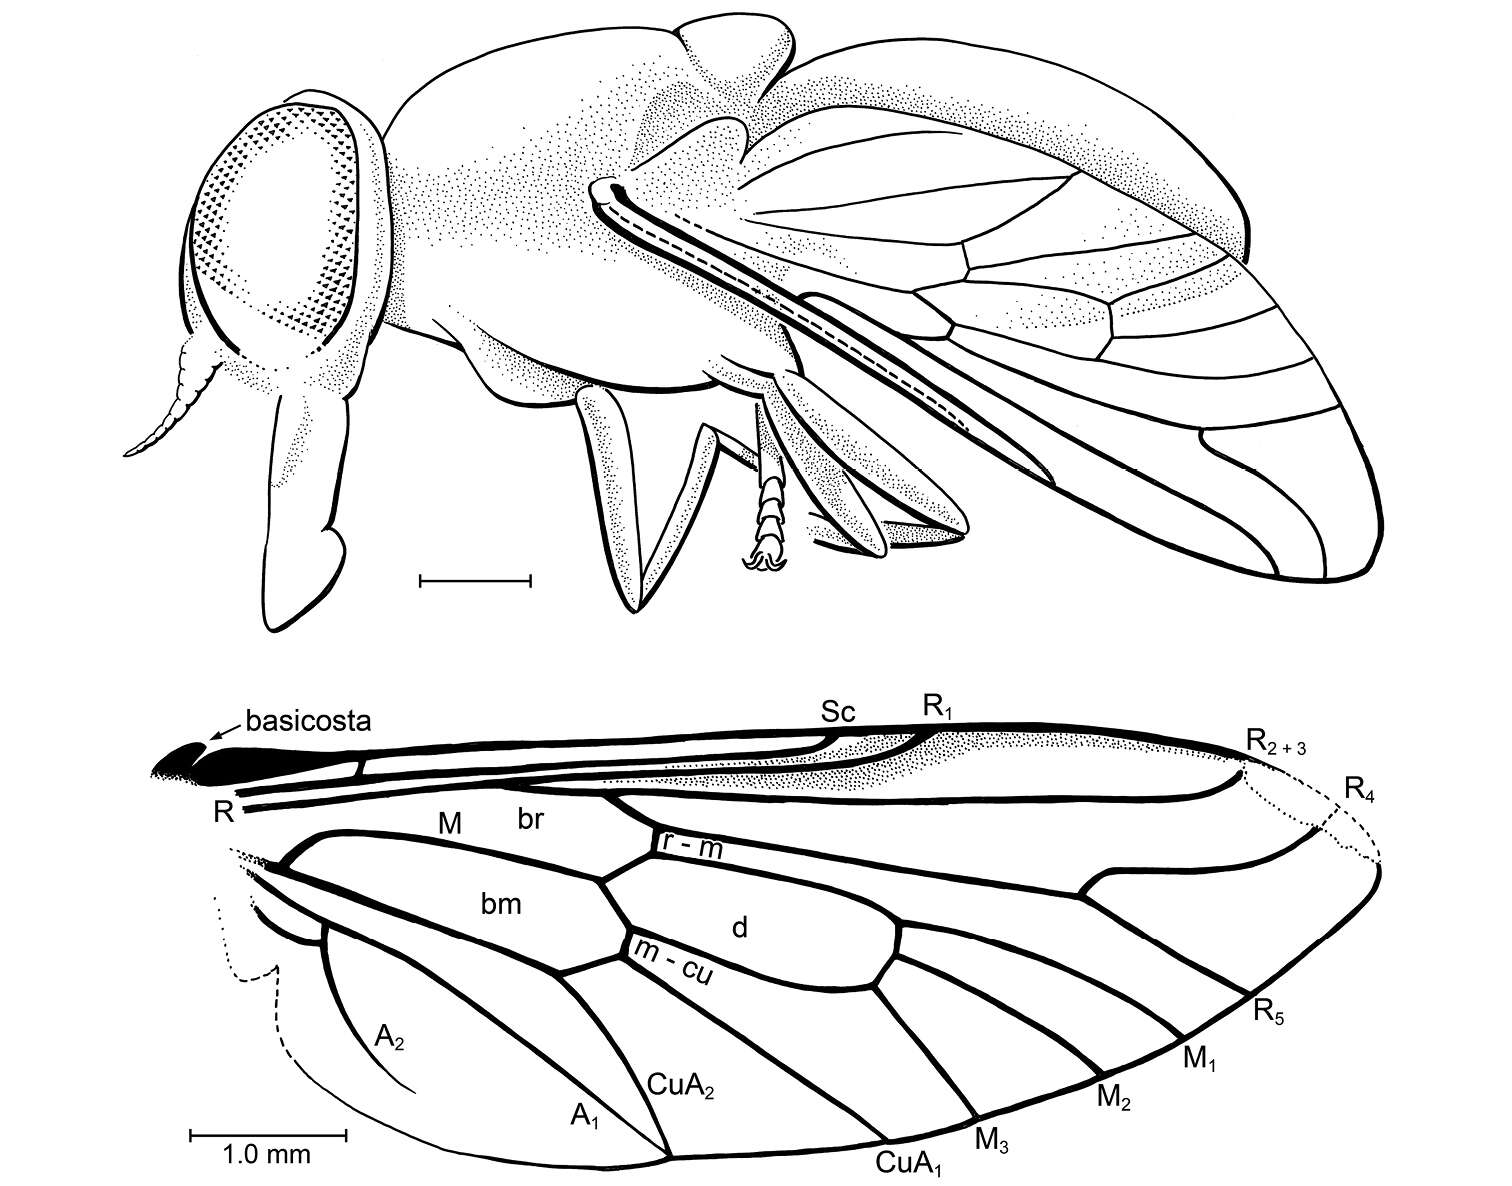 Image de Cratotabanus newjerseyensis Grimaldi